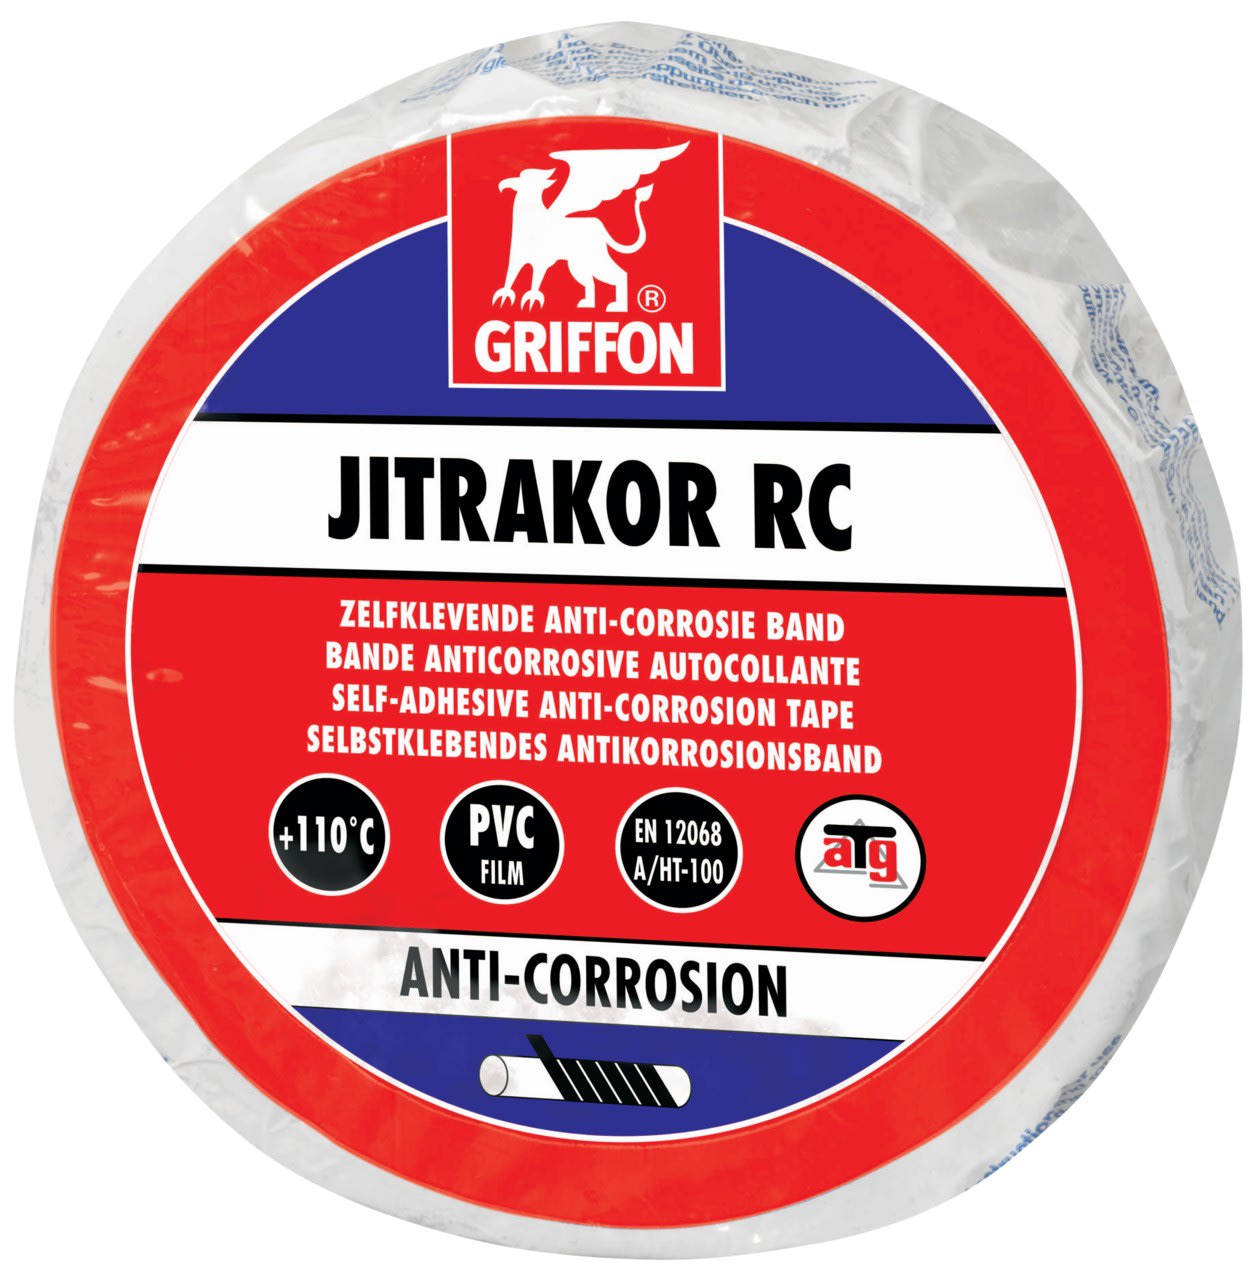 Griffon - JITRAKOR RC Bande anti-corrosion pour tuyaux chauds 10 M x 5 CM